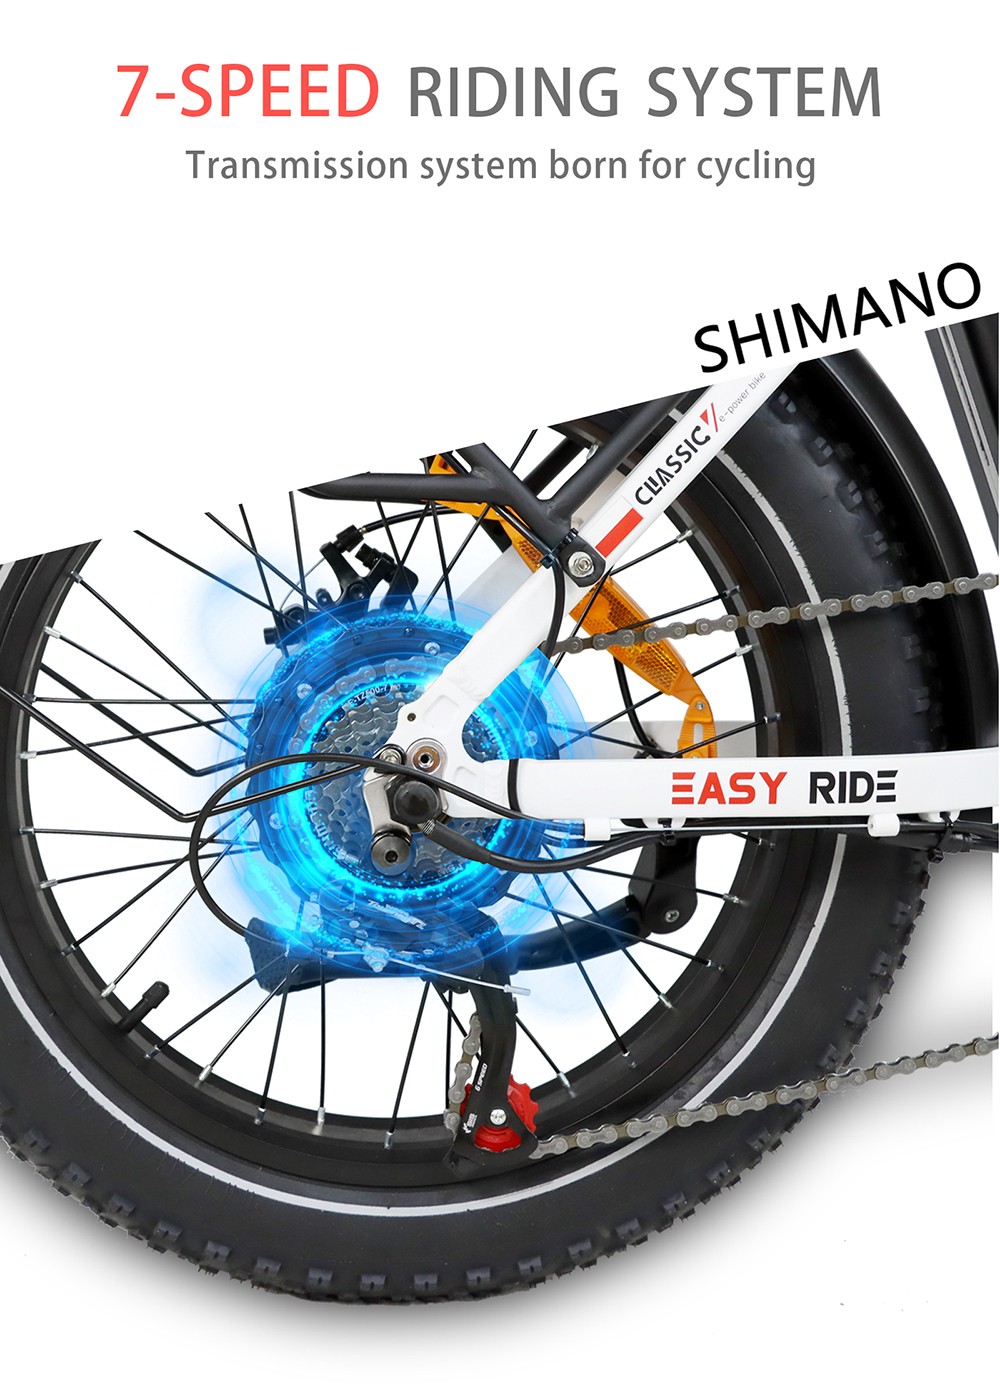 BAOLUJIE DZ2030 elektromos kerékpár, 20 * 4.0 hüvelykes gumiabroncs 500 W motor 48 V 13 Ah cserélhető akkumulátor 40 km/h Max sebesség 35-45 km Hatótáv SHIMANO 7 sebességes - fekete